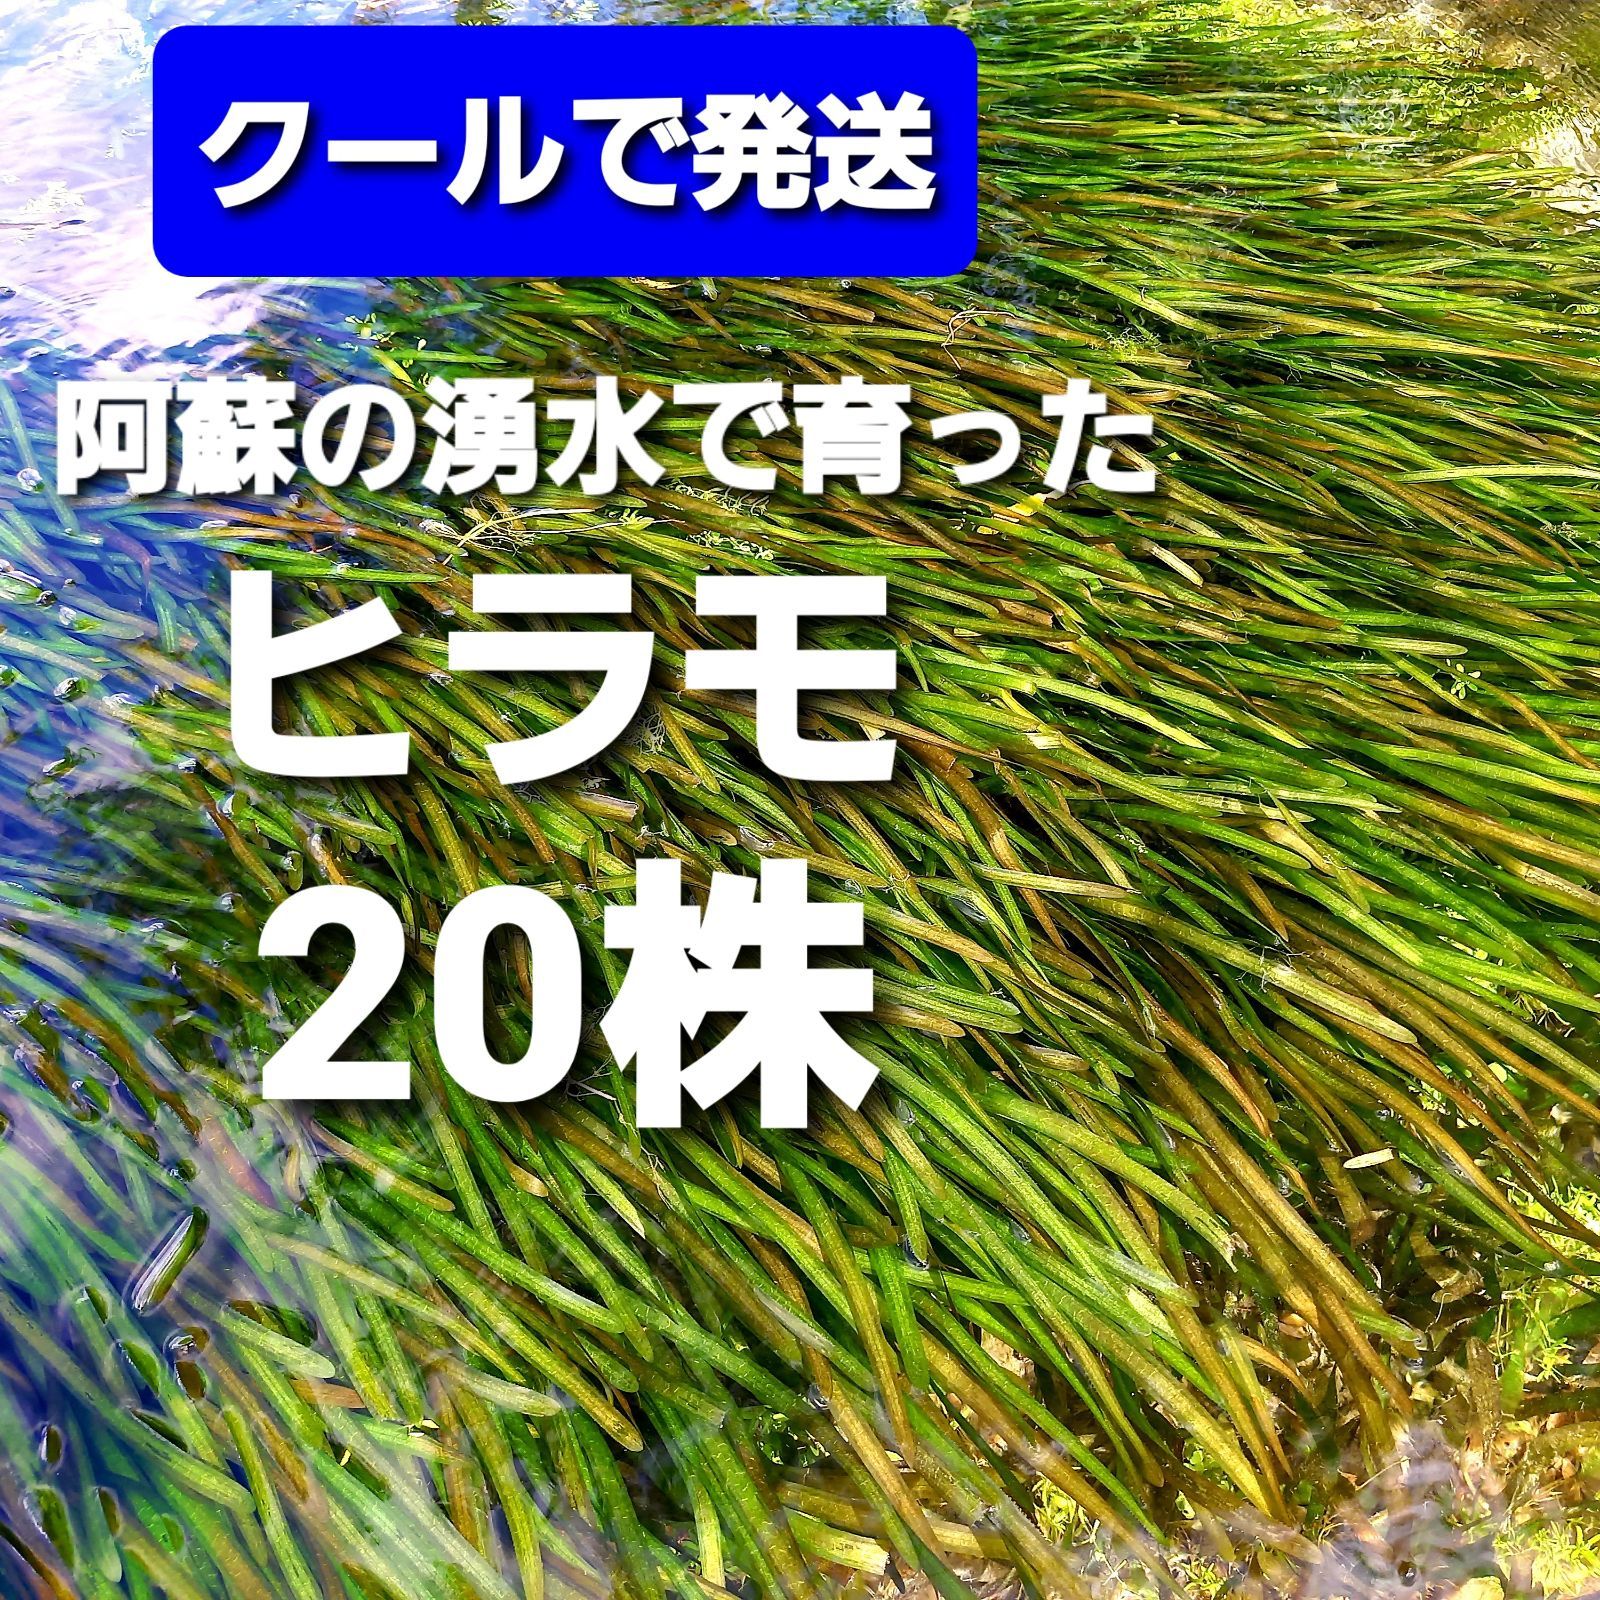 クールで発送 ヒラモ 20株以上 阿蘇の湧水で育った日本の水草 稀少種